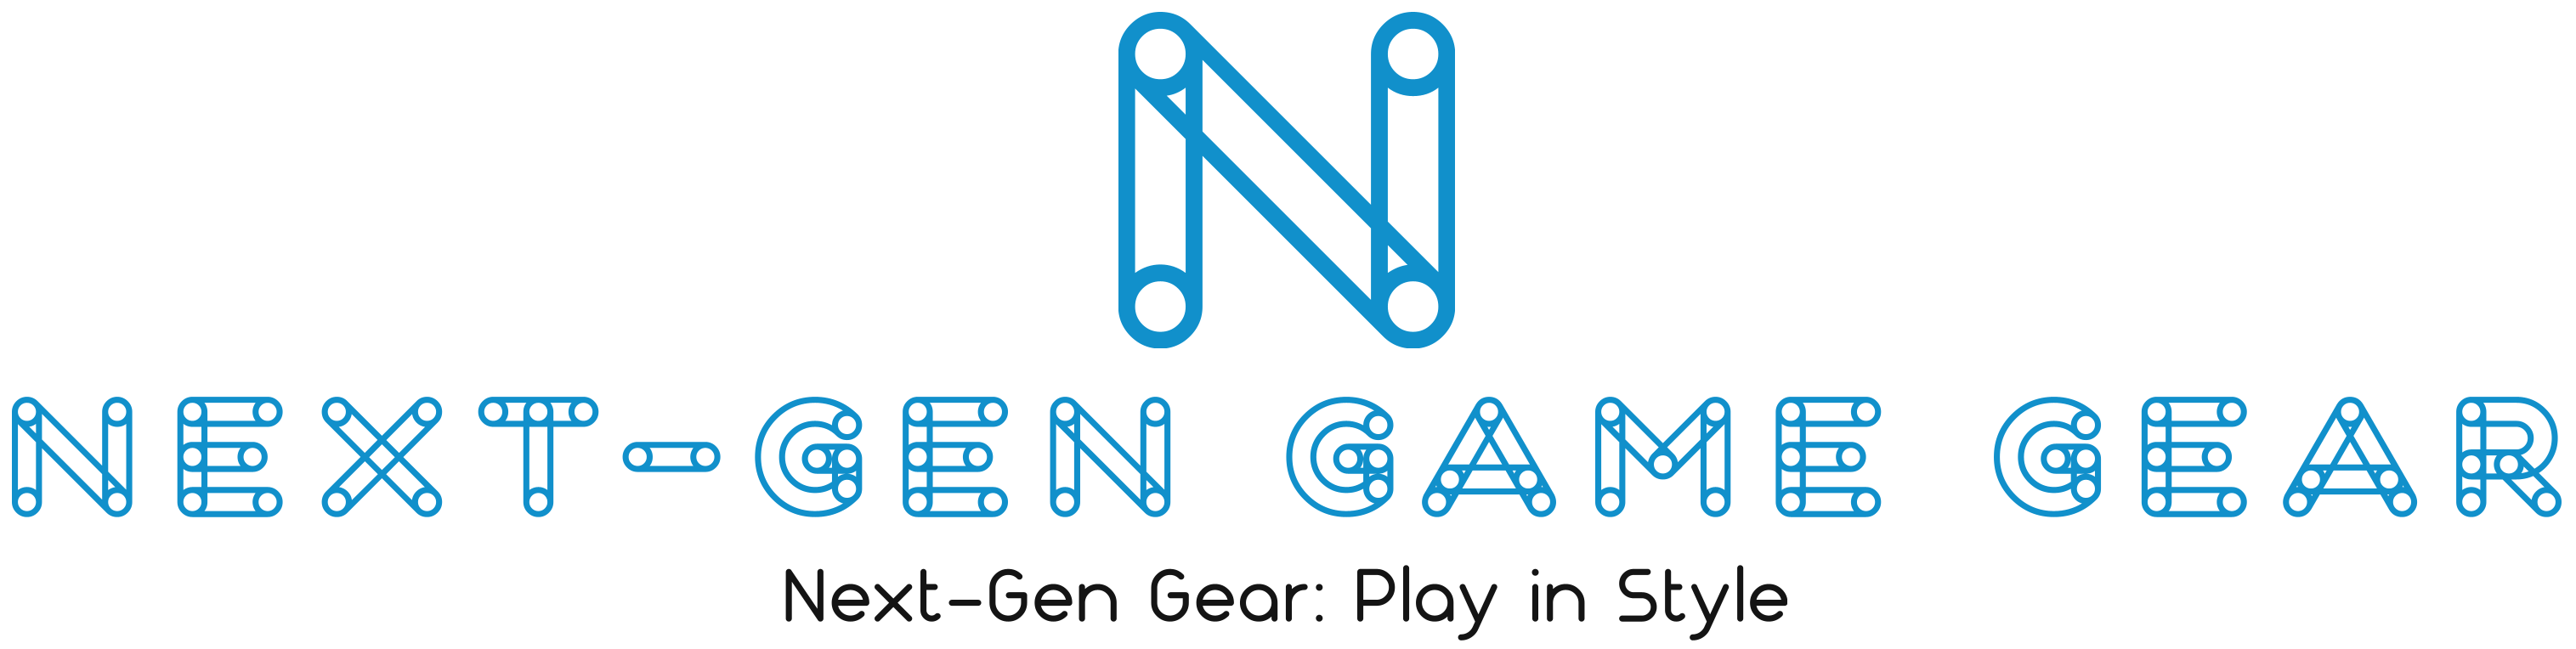 10% Off With Next-Gen Game Gear Voucher Code